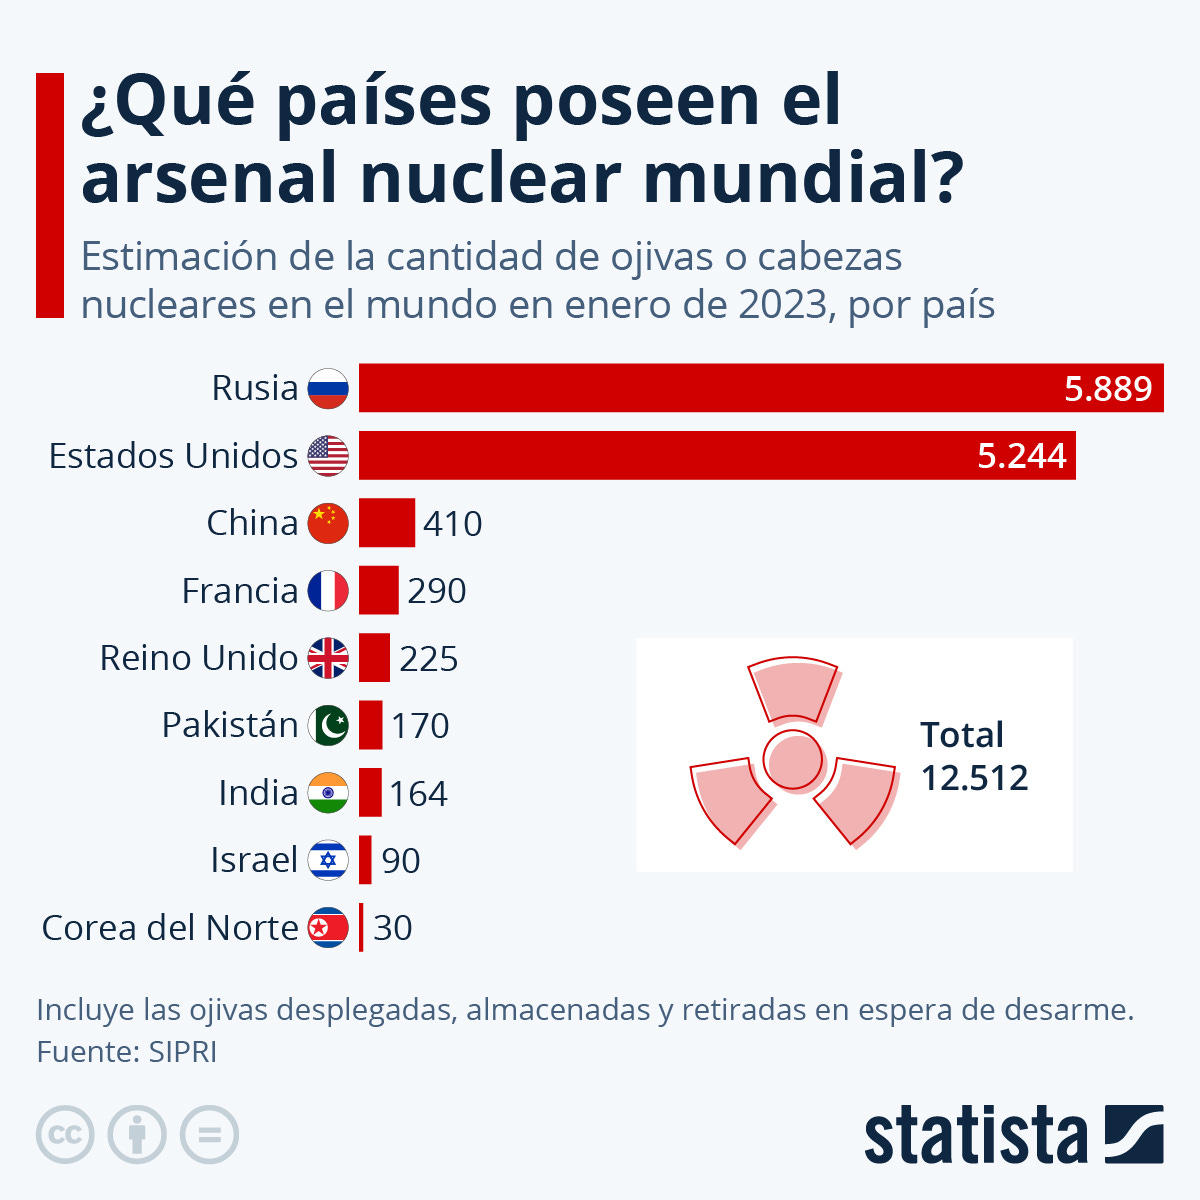 Infografía de Statista sobre el rearme nuclear